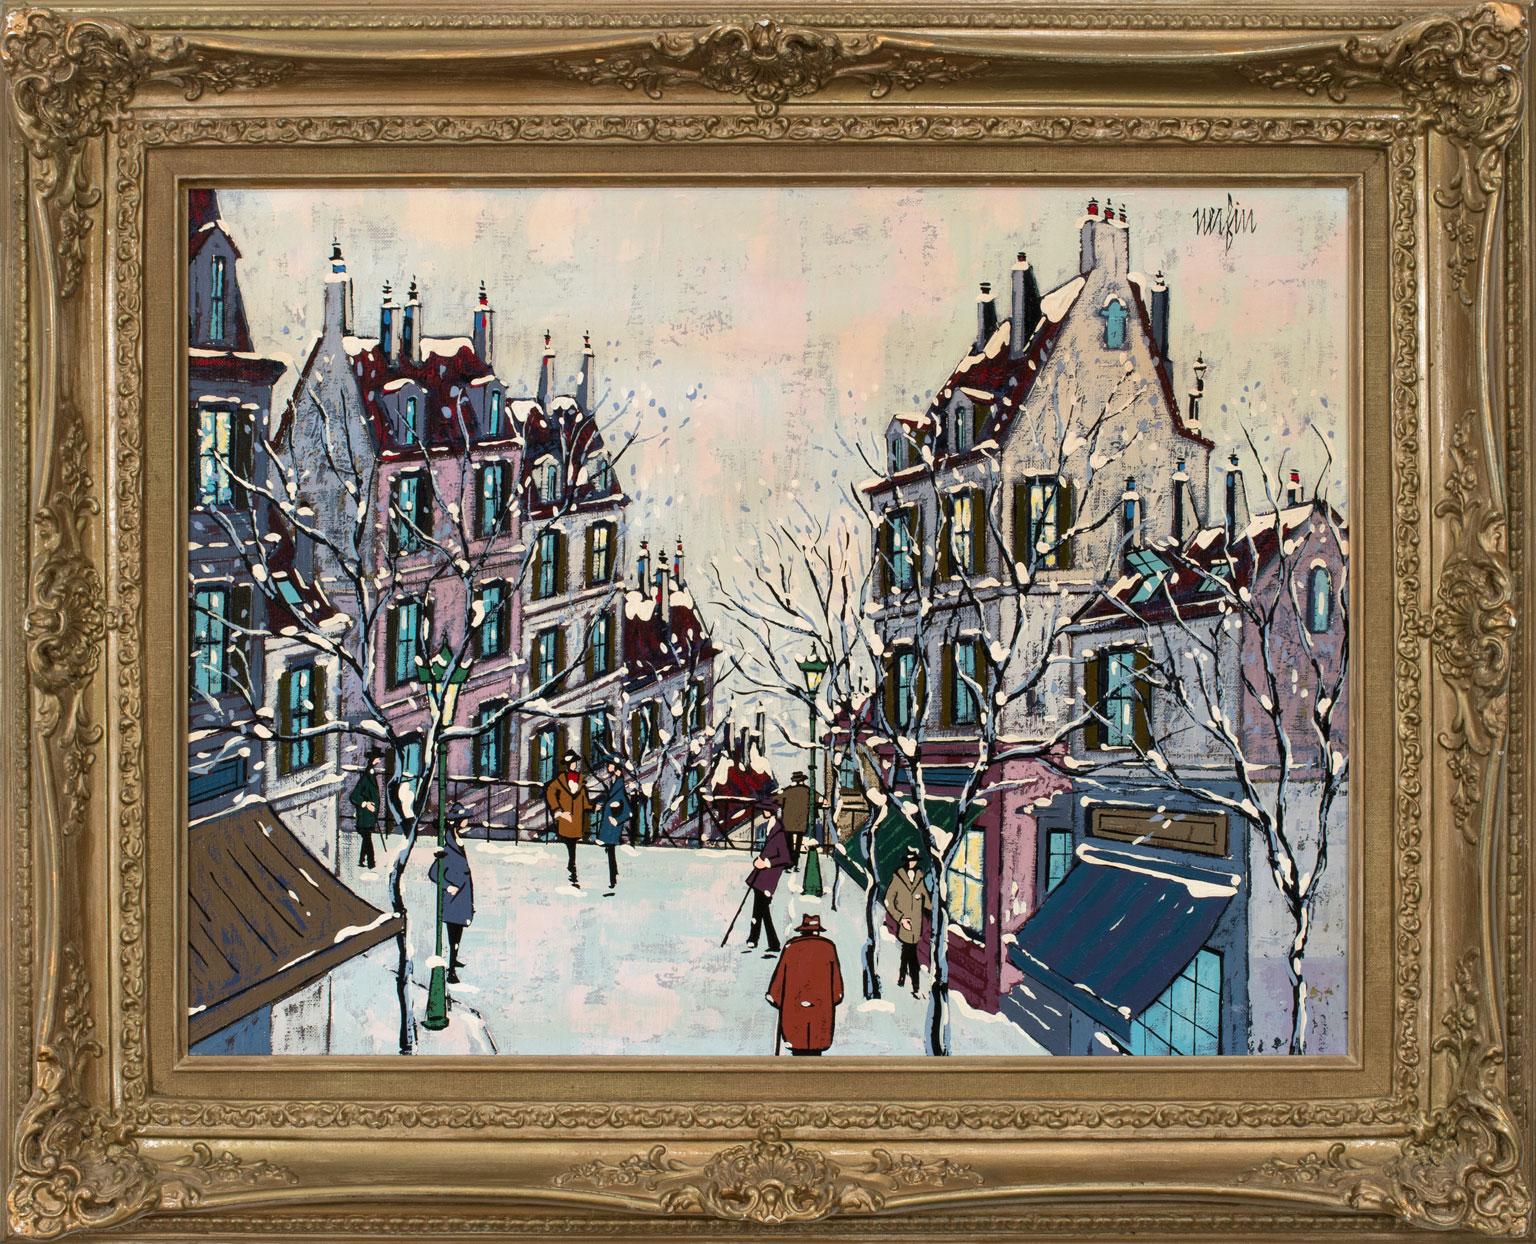 Untitled Abstract Townscape est une huile sur toile originale de Jean Nerfin. L'utilisation par Nerfin de la couleur et d'un style combiné post-impressionniste-fauvisme-pointillisme témoigne d'un style unique qui lui est propre. Ses œuvres ont